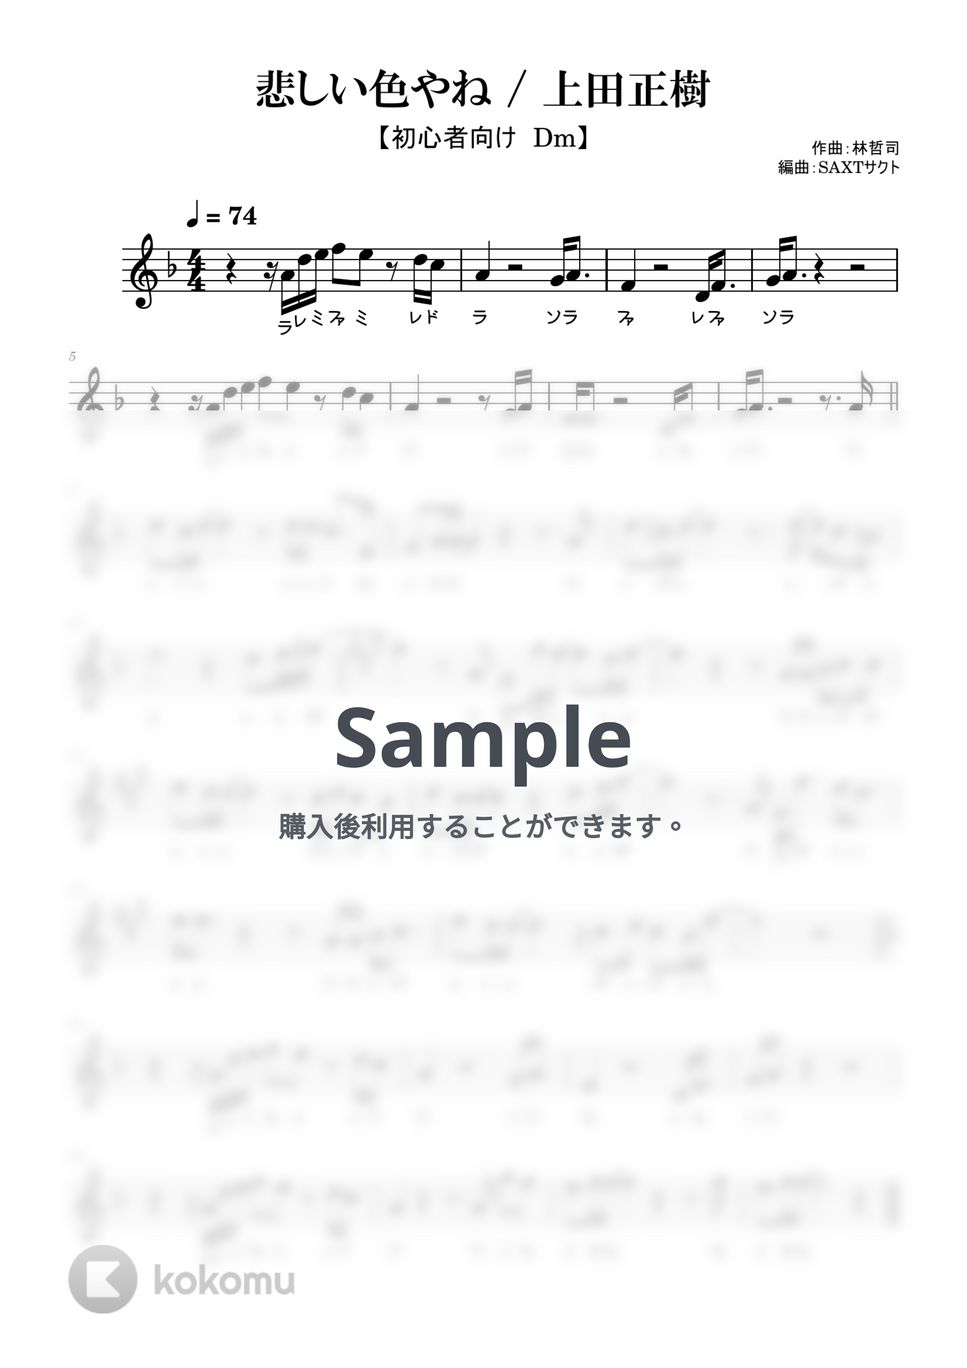 上田正樹 - 悲しい色やね (めちゃラク譜) by SAXT